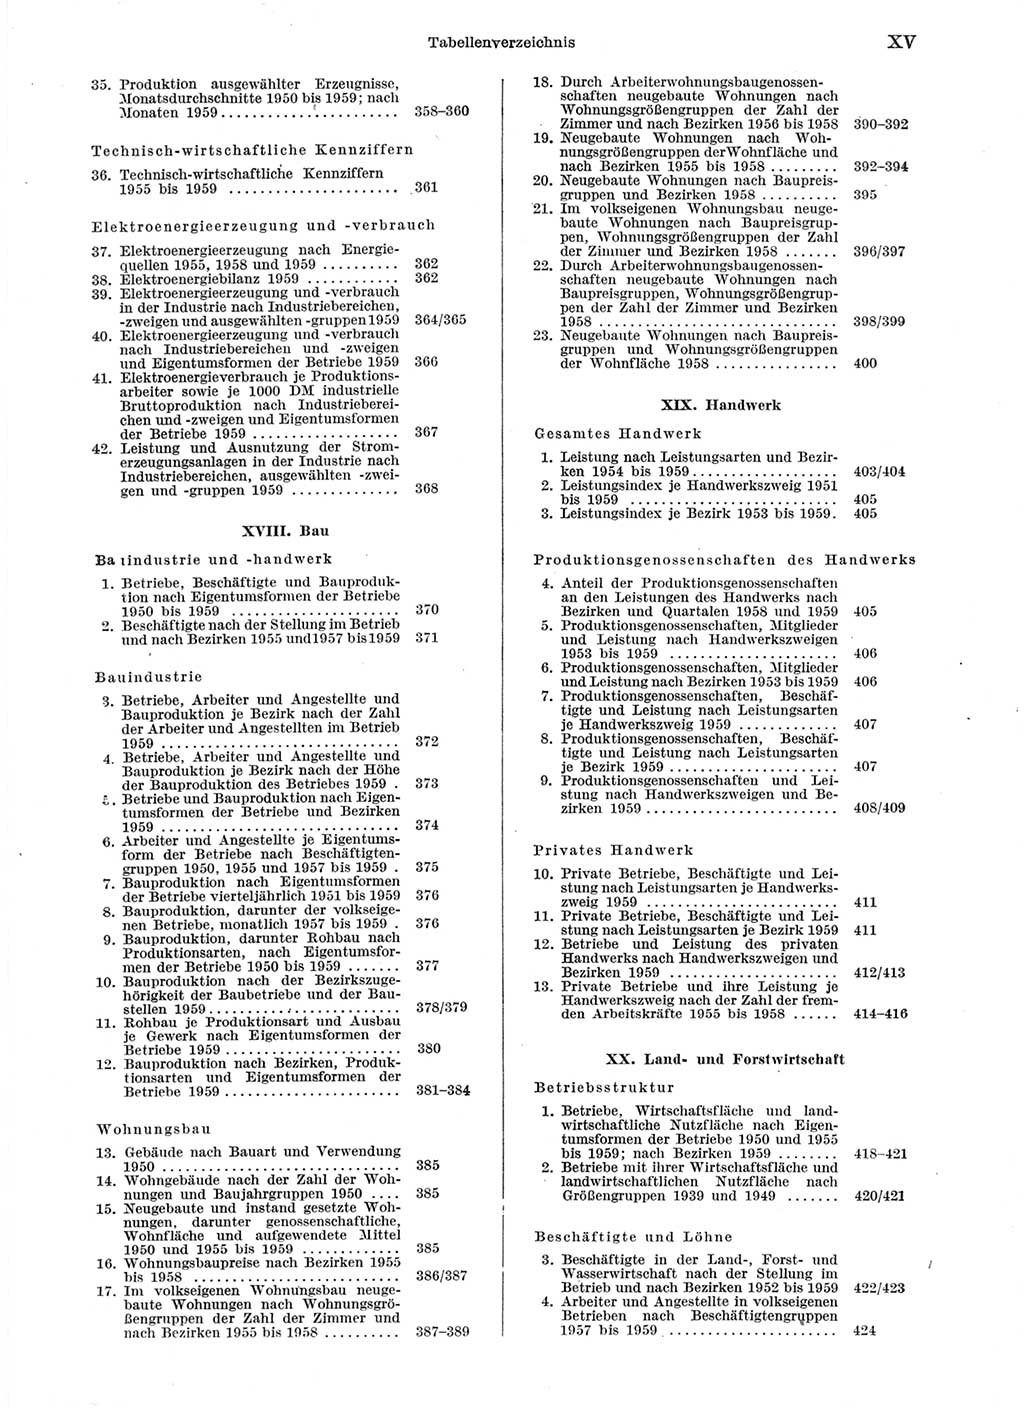 Statistisches Jahrbuch der Deutschen Demokratischen Republik (DDR) 1959, Seite 15 (Stat. Jb. DDR 1959, S. 15)